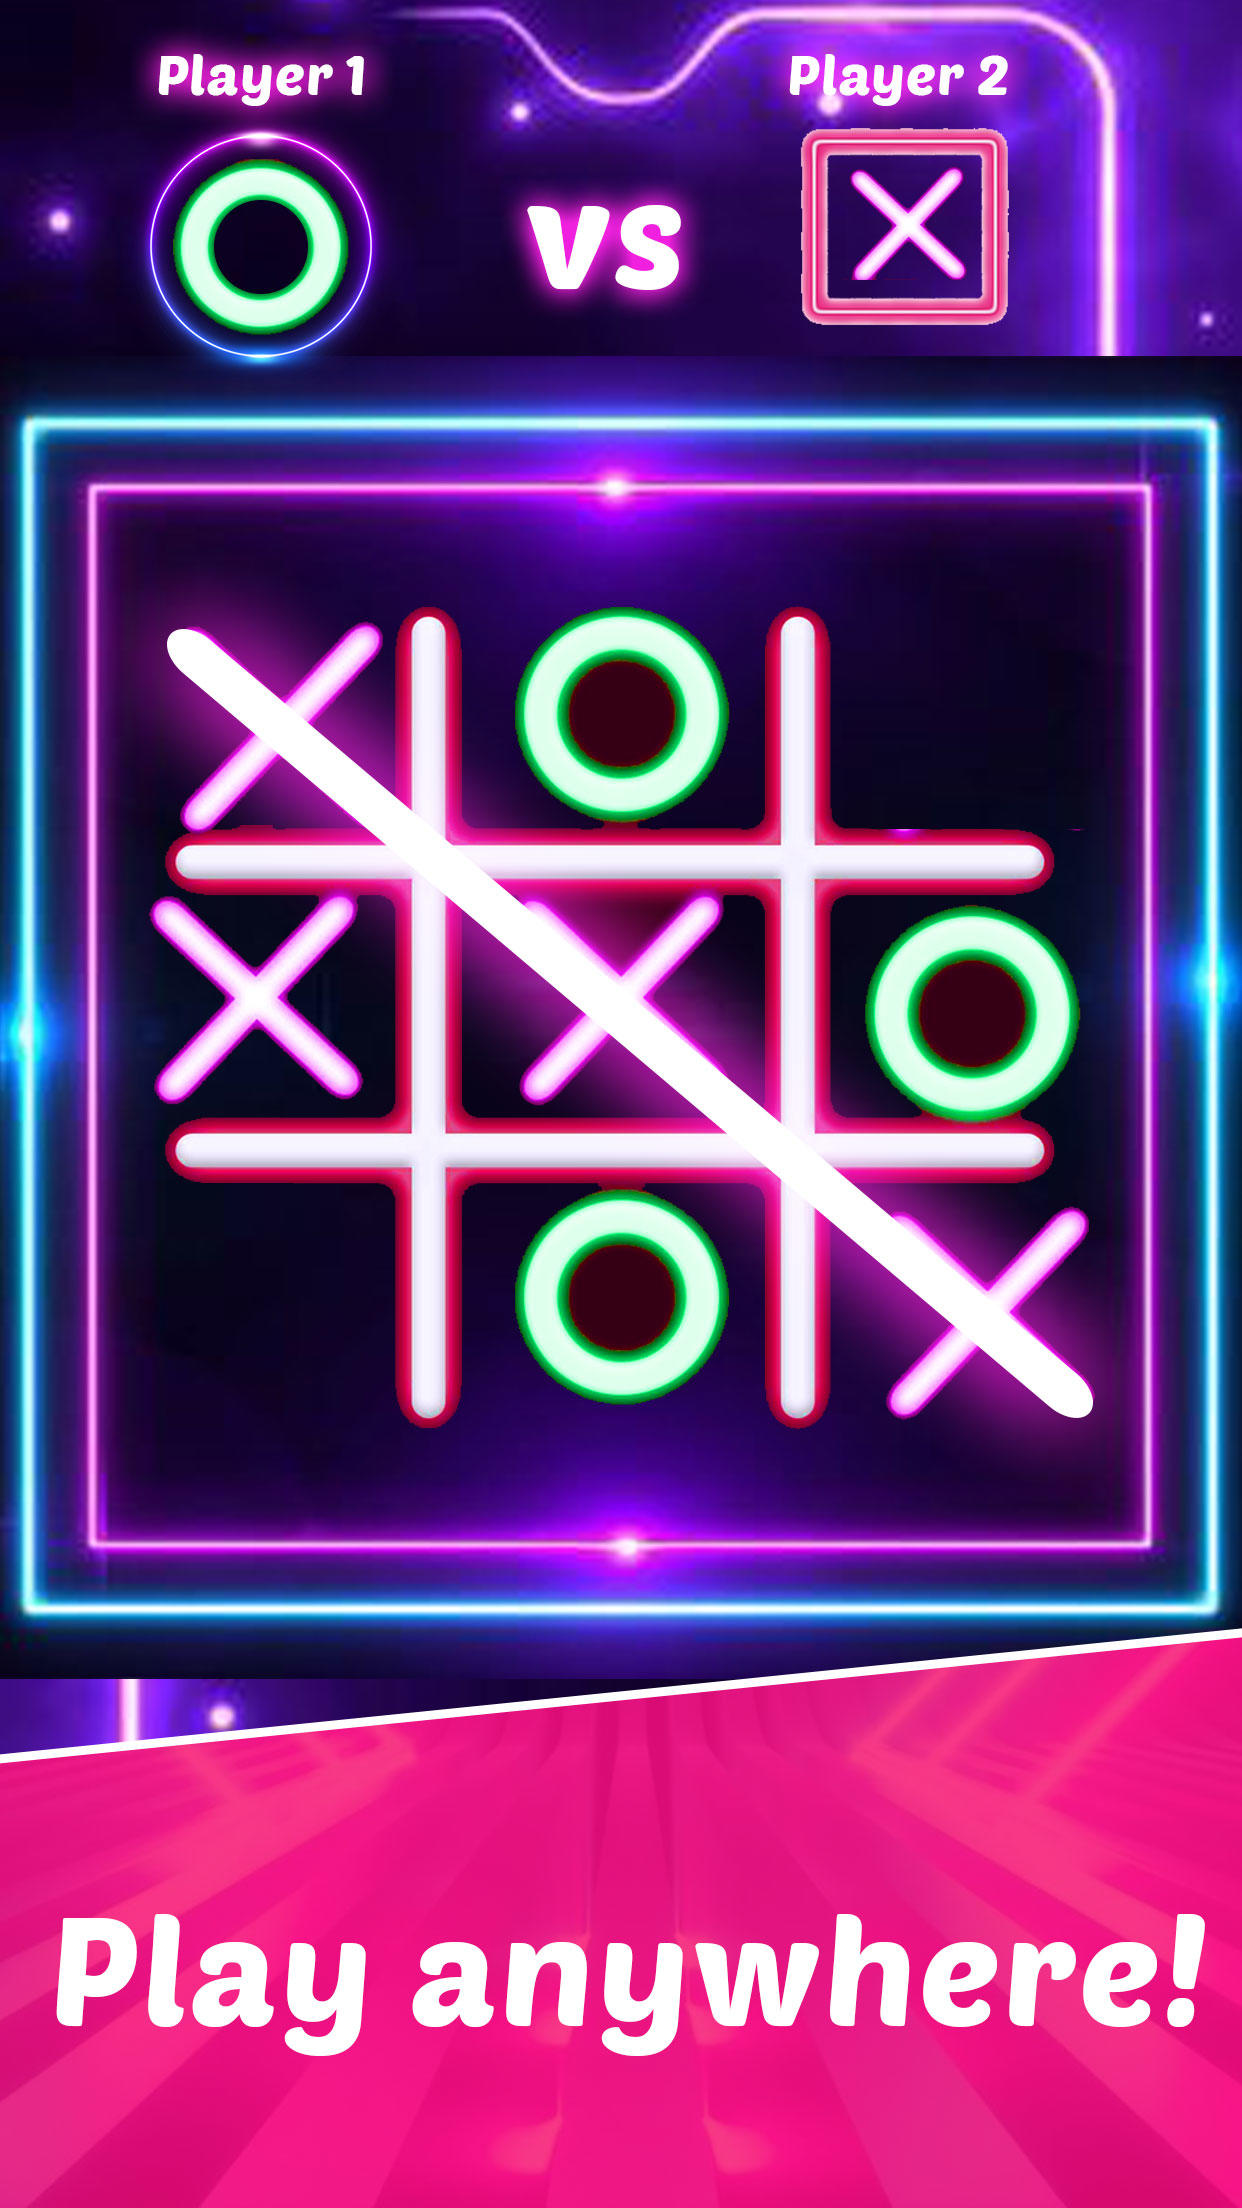 Screenshot 1 of Крестики-нолики XO головоломка для 2 игроков 1.0